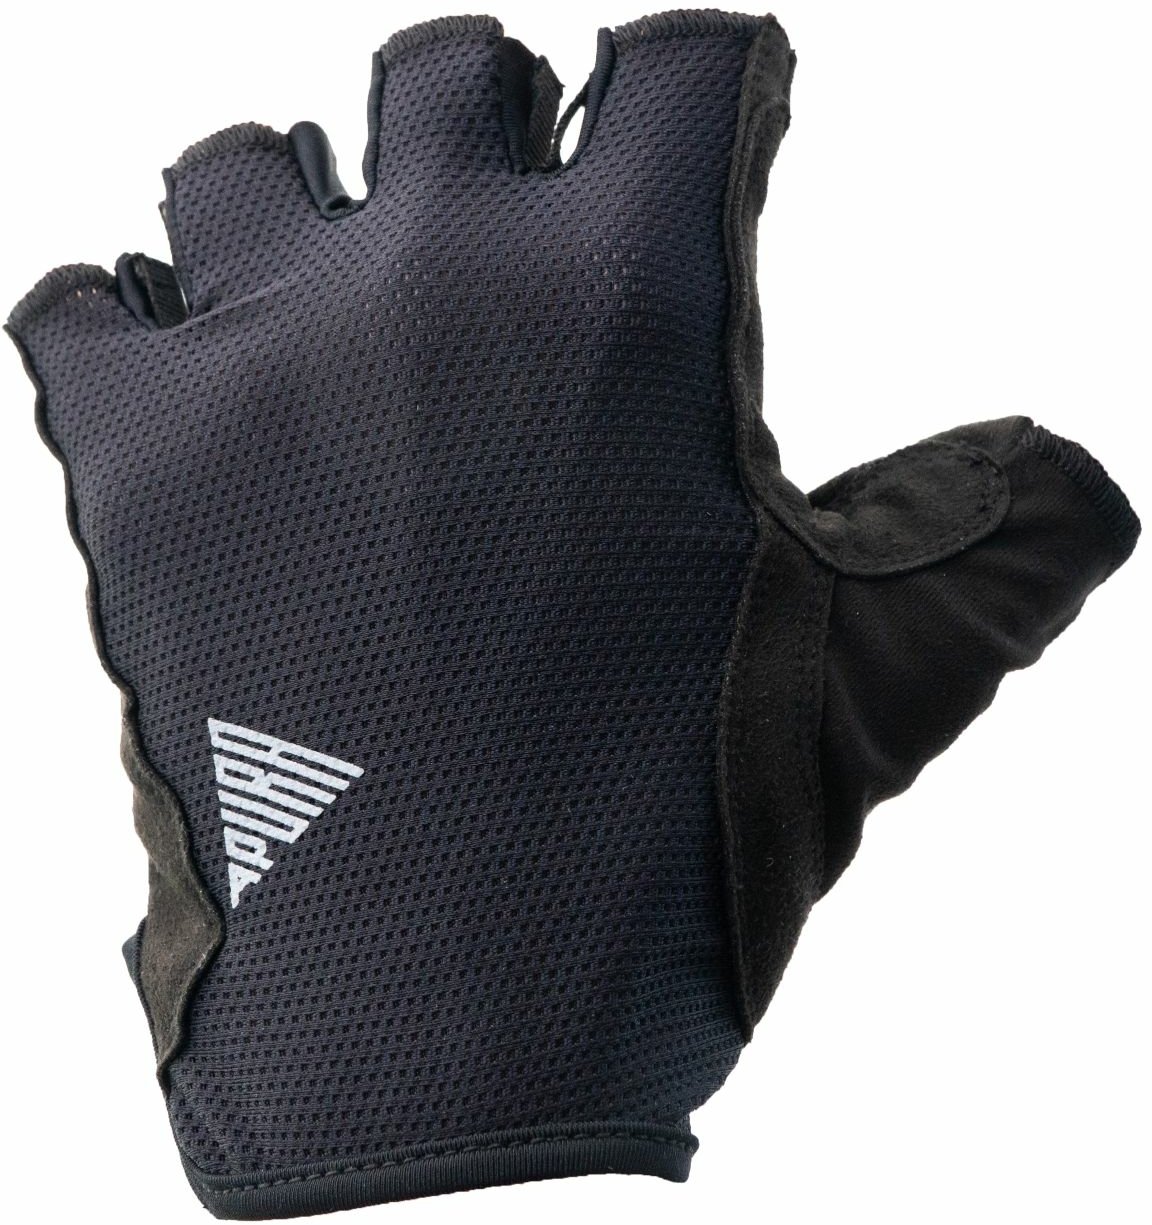 Bekleidung/Handschuhe: Apura  Handschuh Pure XS 